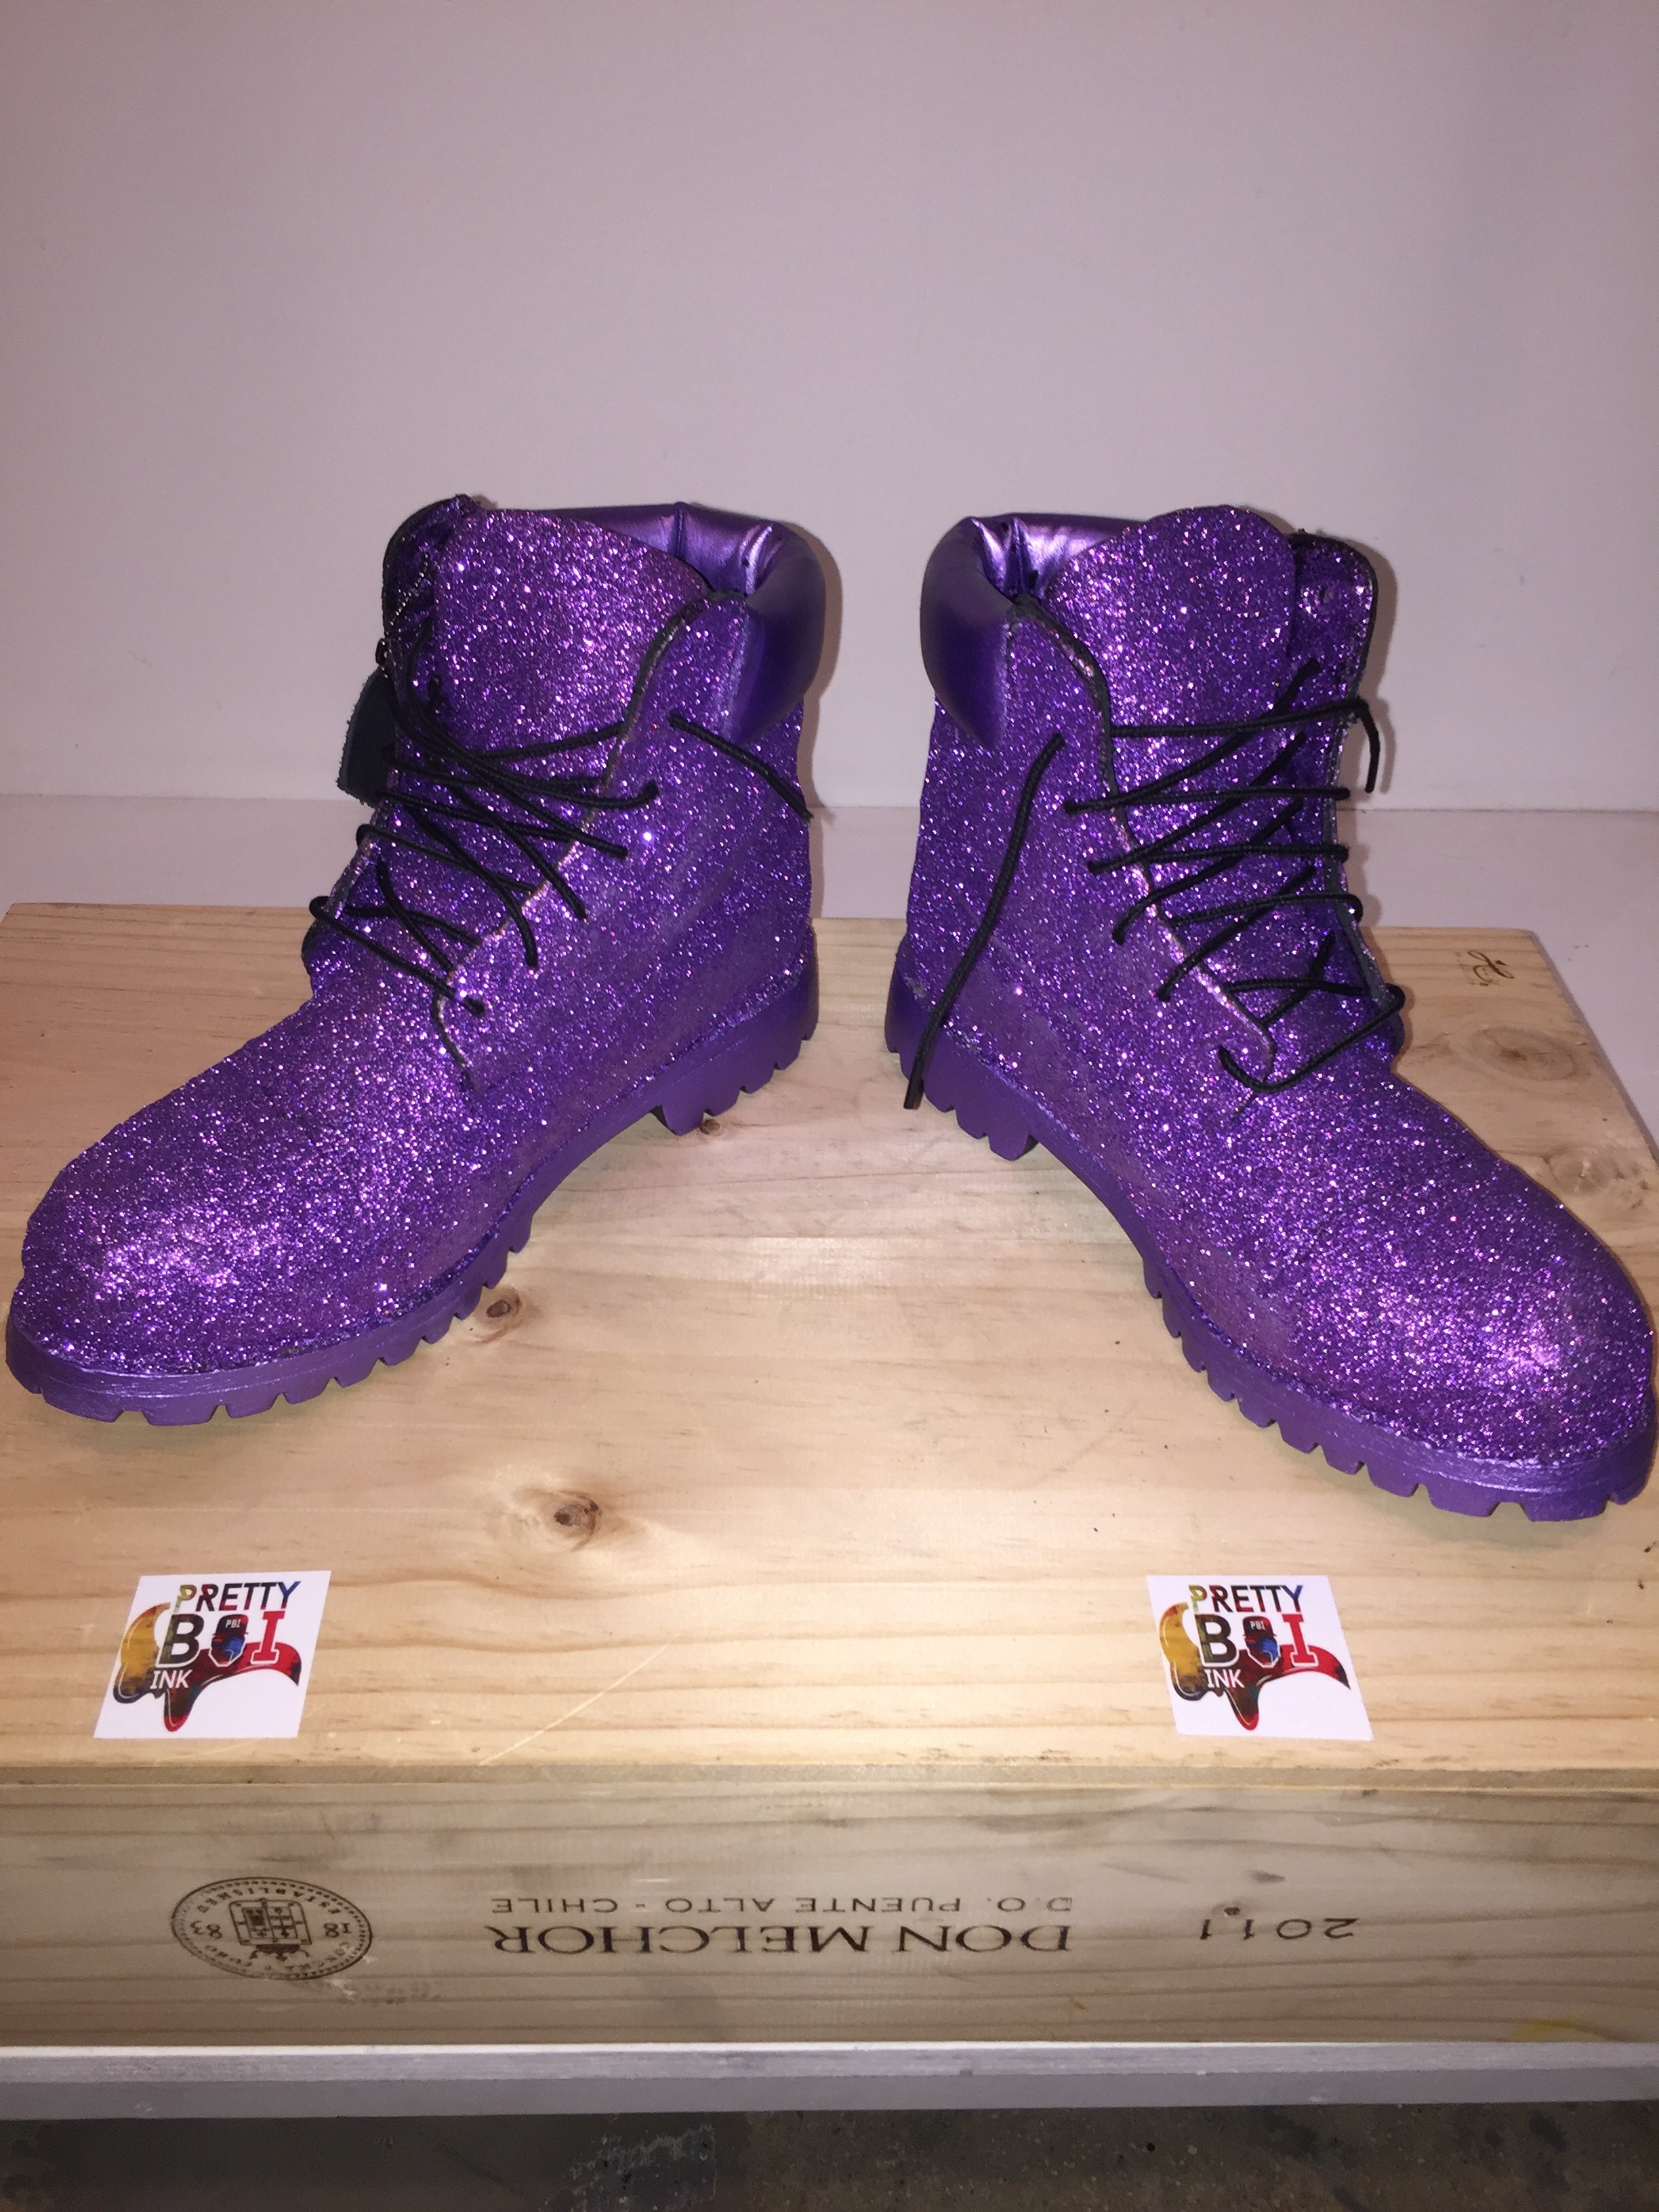 purple timberland boots